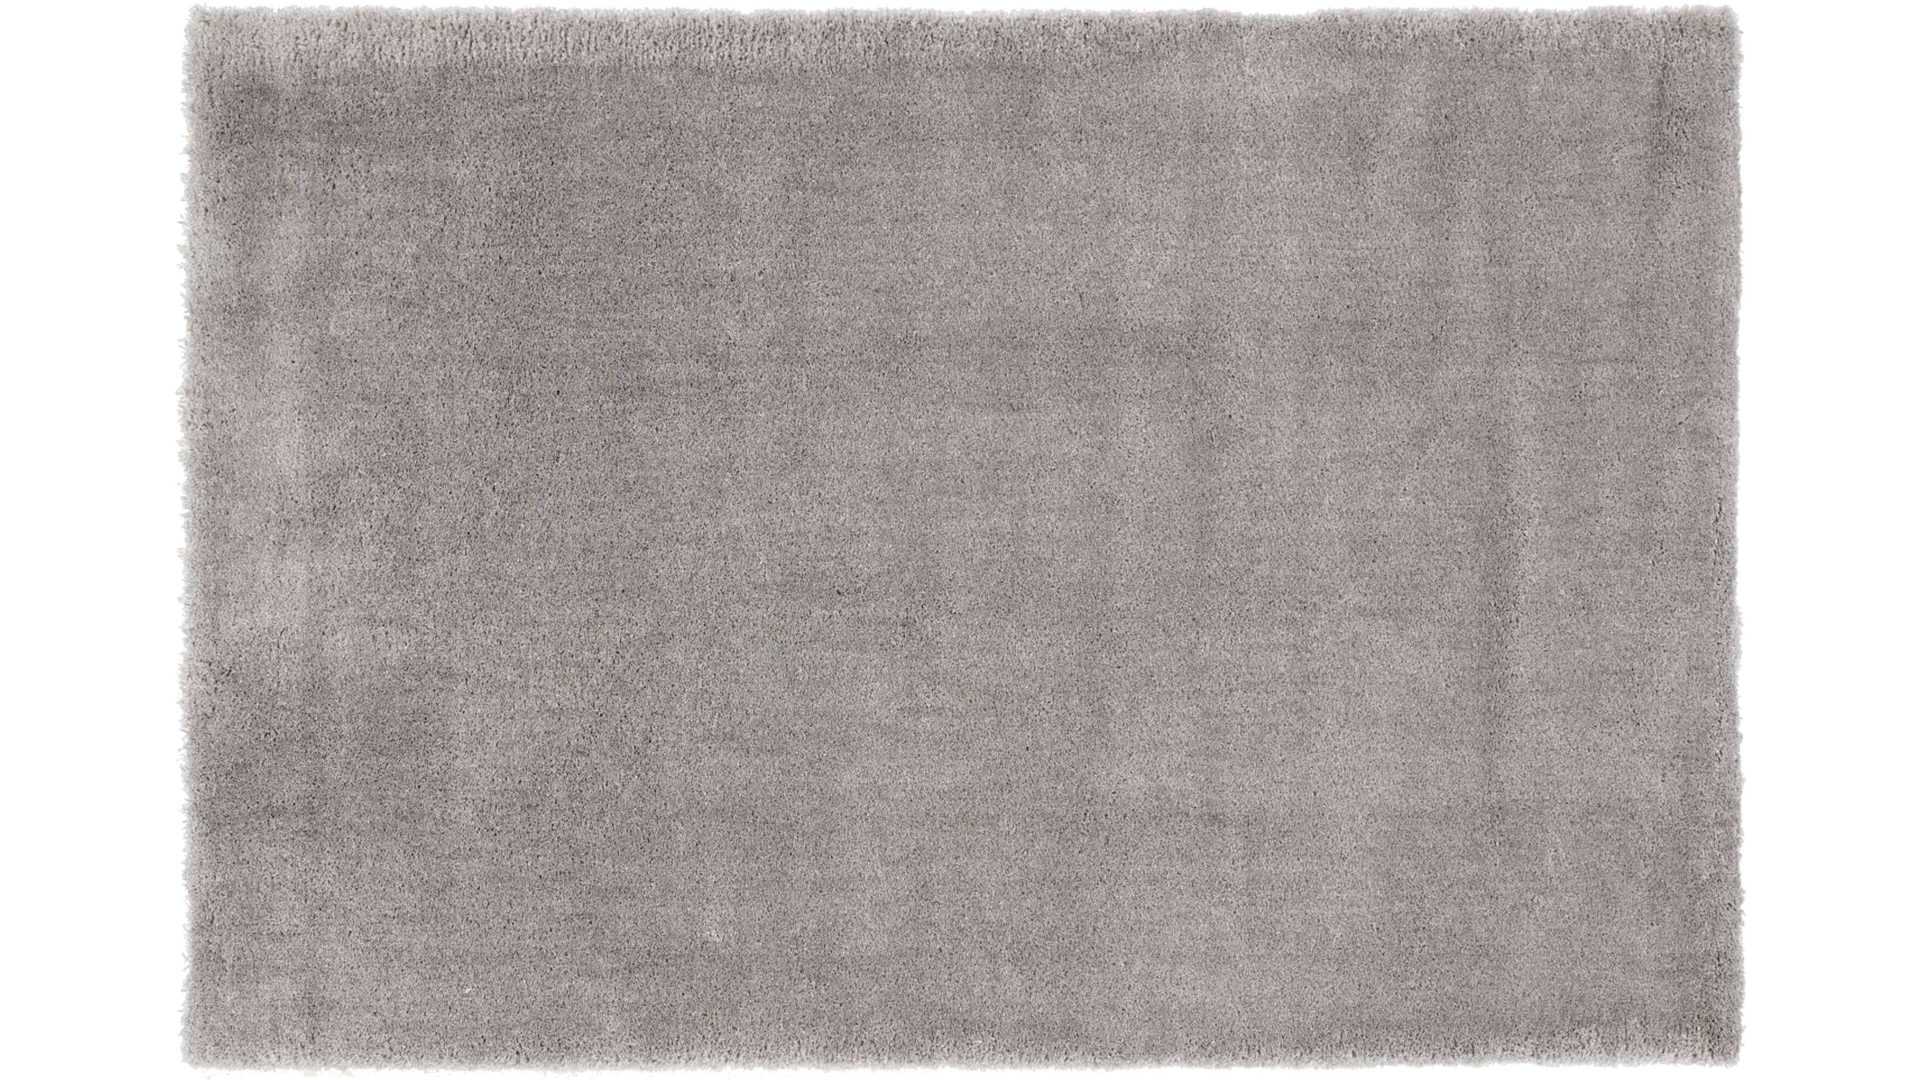 Shaggyteppich Oci aus Kunstfaser in Grau Shaggyteppich Royal Shaggy für Ihre Wohnaccessoires graue Kunstfaser – ca. 200 x 290 cm